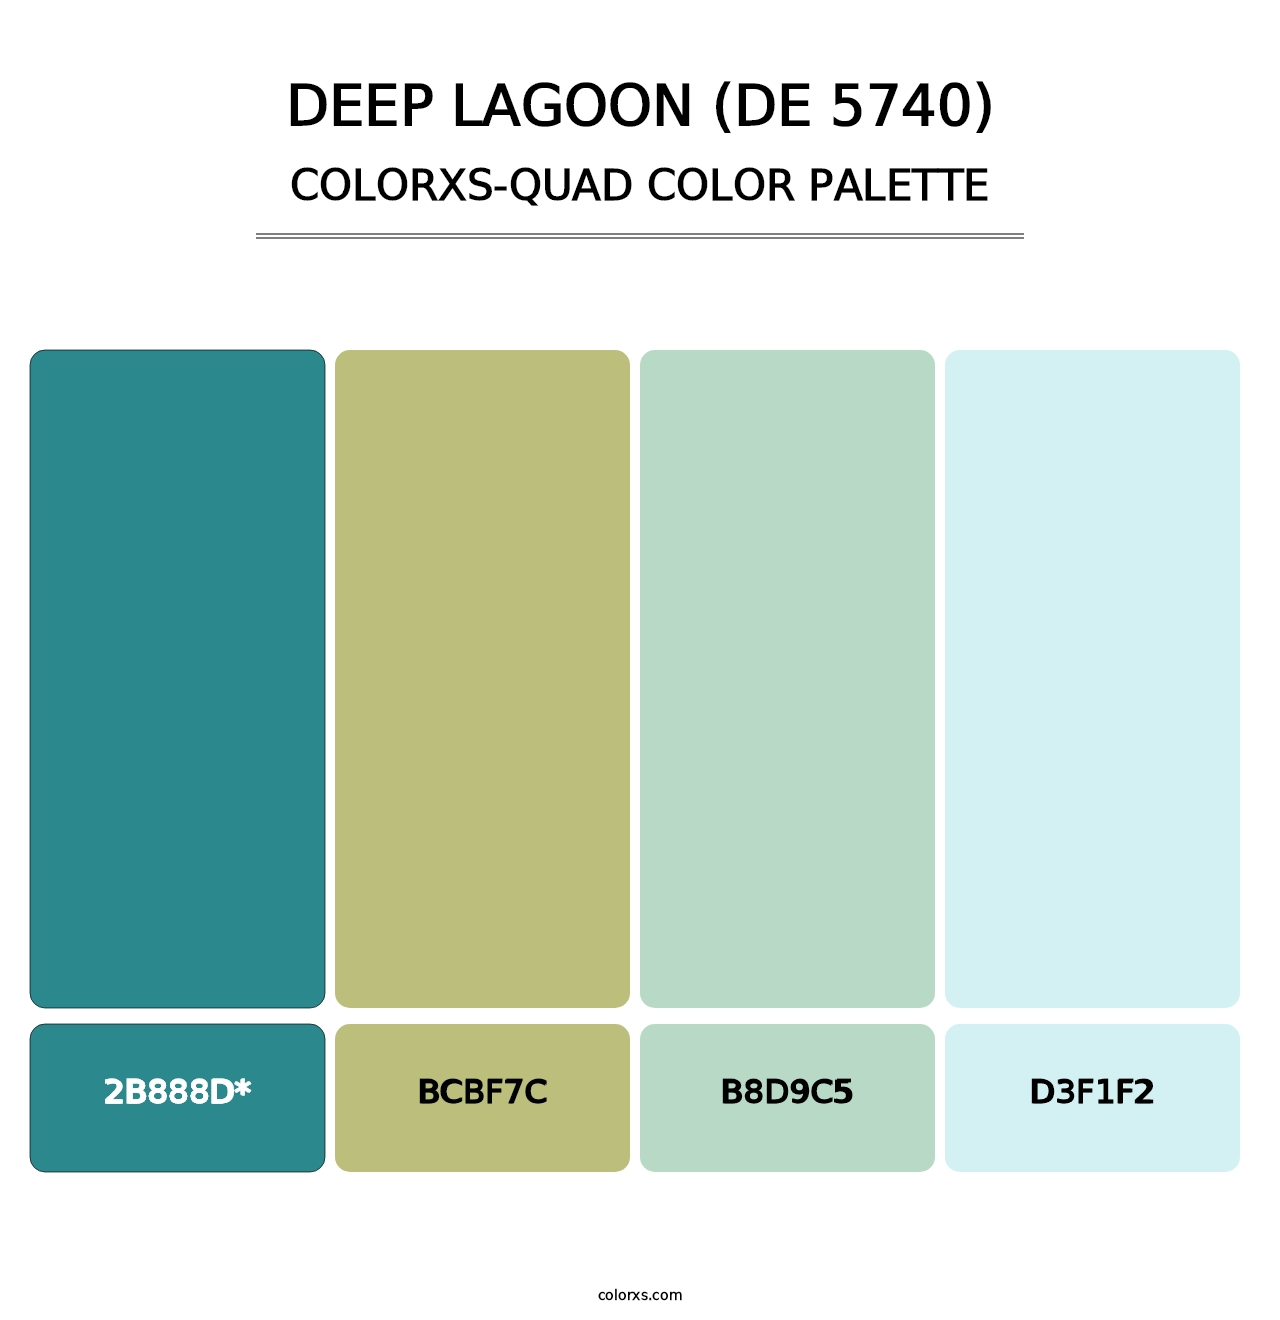 Deep Lagoon (DE 5740) - Colorxs Quad Palette